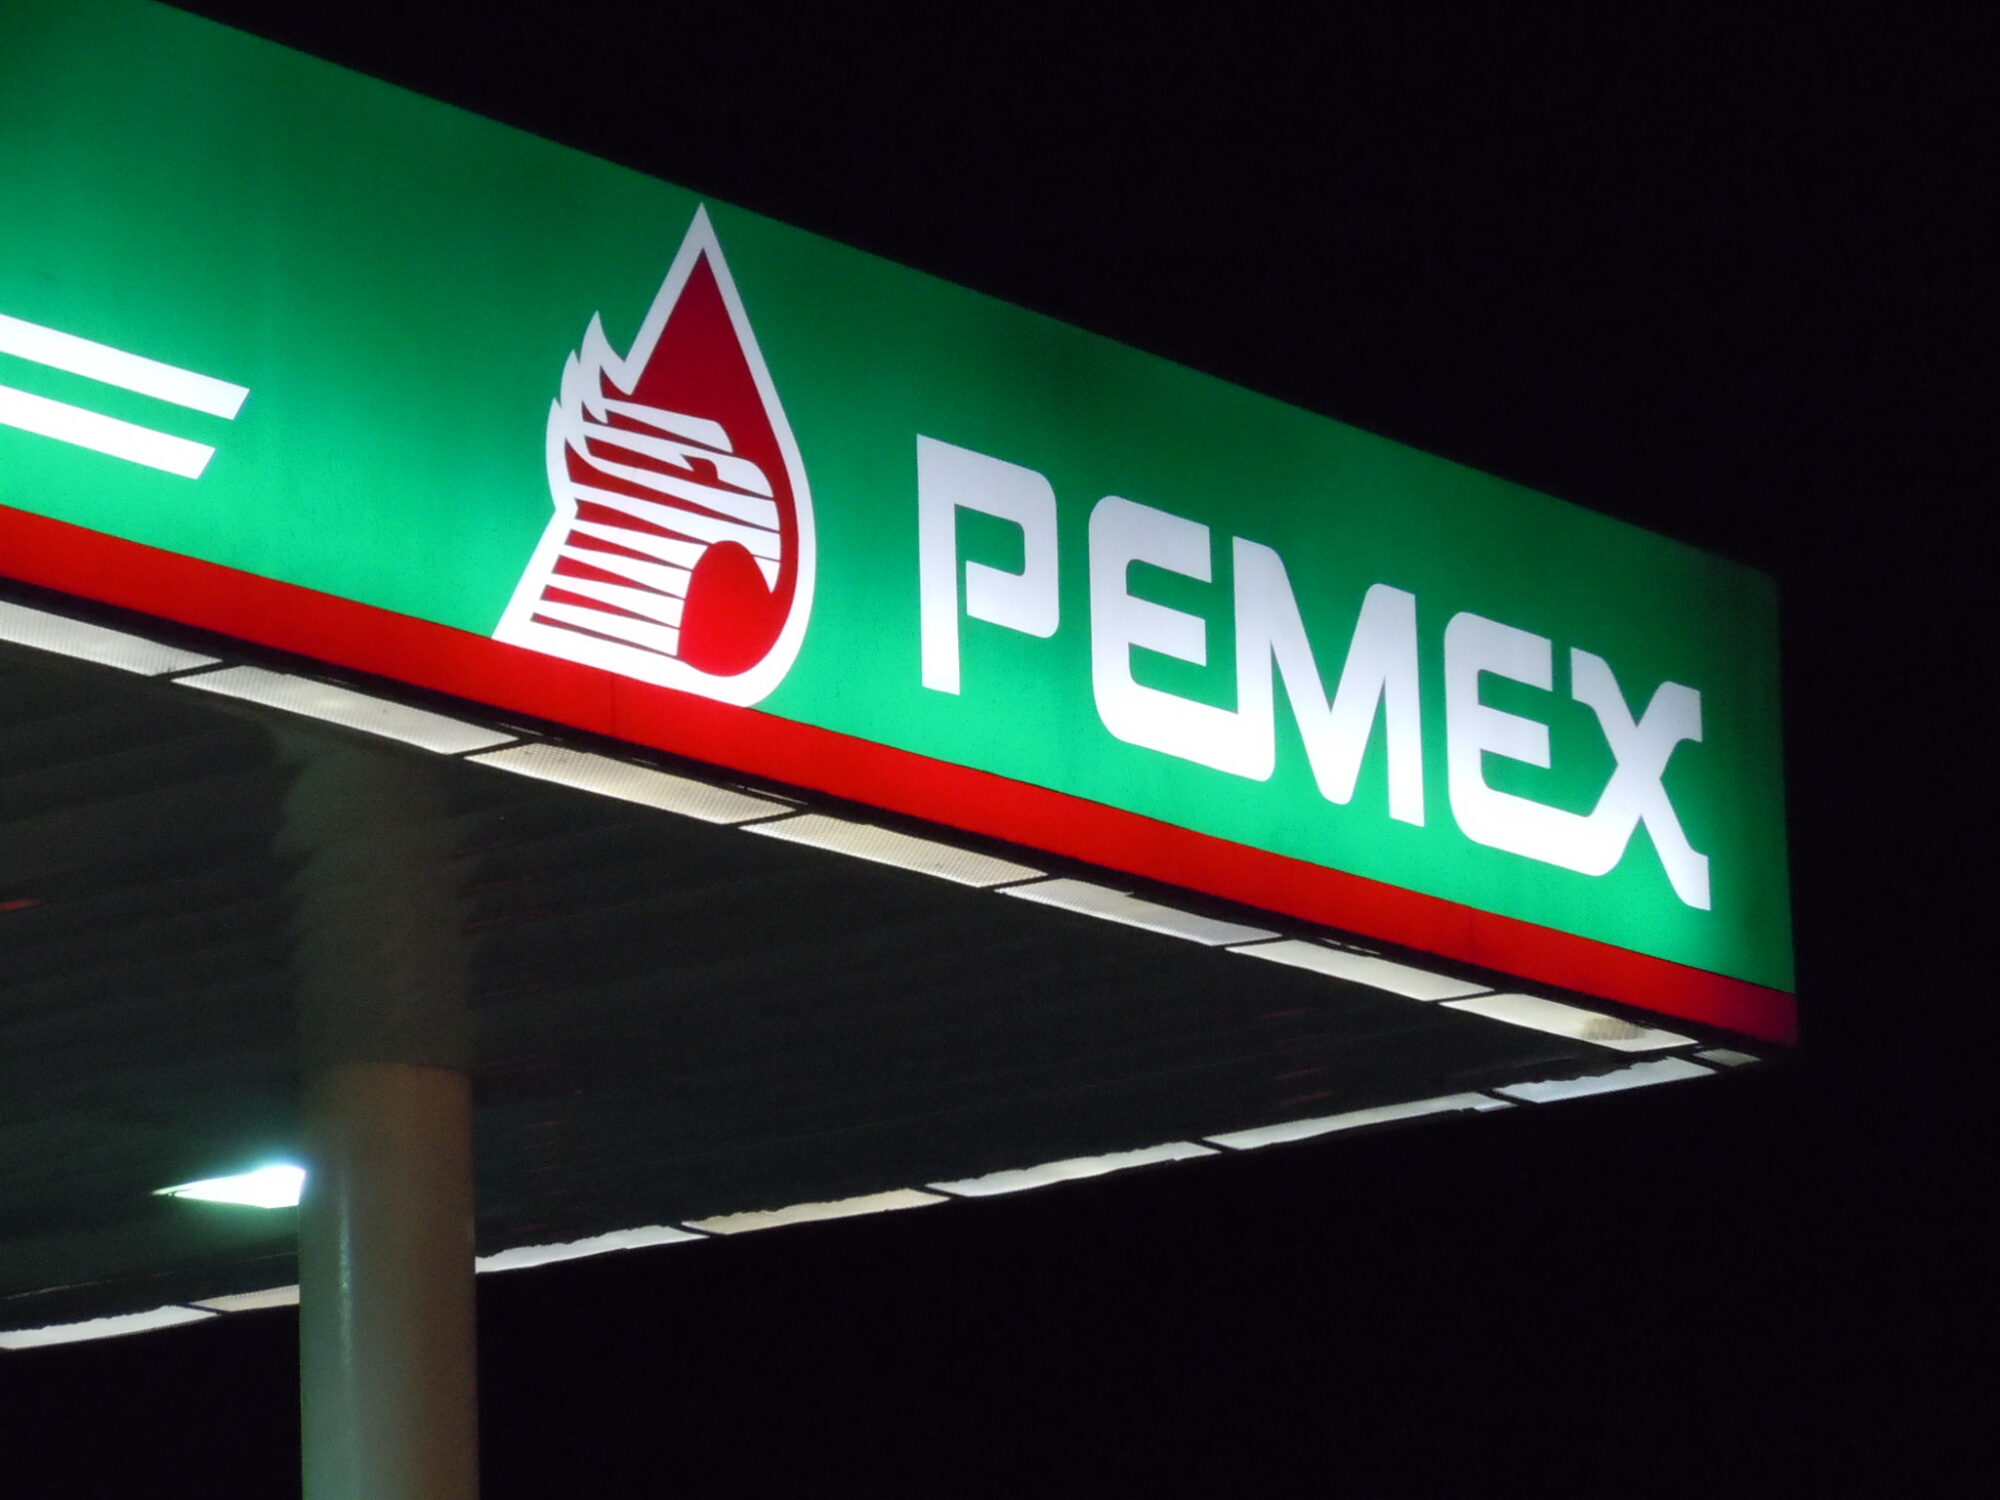 <p>Pemex, la empresa estatal mexicana de petróleo está dentro de las primeras 20 empresas más emisoras de la historia (Imagen: <a href="https://flickr.com/photos/rutlo/5337912858/in/photolist-98Gcwj-2kxnjiC-5RUD2j-5PoozE-5exo2c-5extnM-5extrr-2Wsbq-9A5HXA-2kS9tjz-5Pj5bz-9CcXrP-4Cfkeq-DR5PBj-a6eDUp-4zHg4i-52a2pD-Q1tnL-5JEUwc-H9YjhD-bnG2aC-jULkWJ-z9mpT-RaYUi-5YNSB-5ERvHK-PMGy5-Nyo4x-9m4wZW-F1nGJ-4xwncC-2kSKqiC-mBb3wB-8rzavu-qiFUhm-qAfGM2-irQ2x-8ruDPZ-52kkDV-6HMtgK-6HMqPR-9idBmt-bF4356-6HMqai-dRN6GU-6HMpfM-7eF6Zp-6HMpLv-6HMpP8-6e4bsj">Flickr</a>)</p>